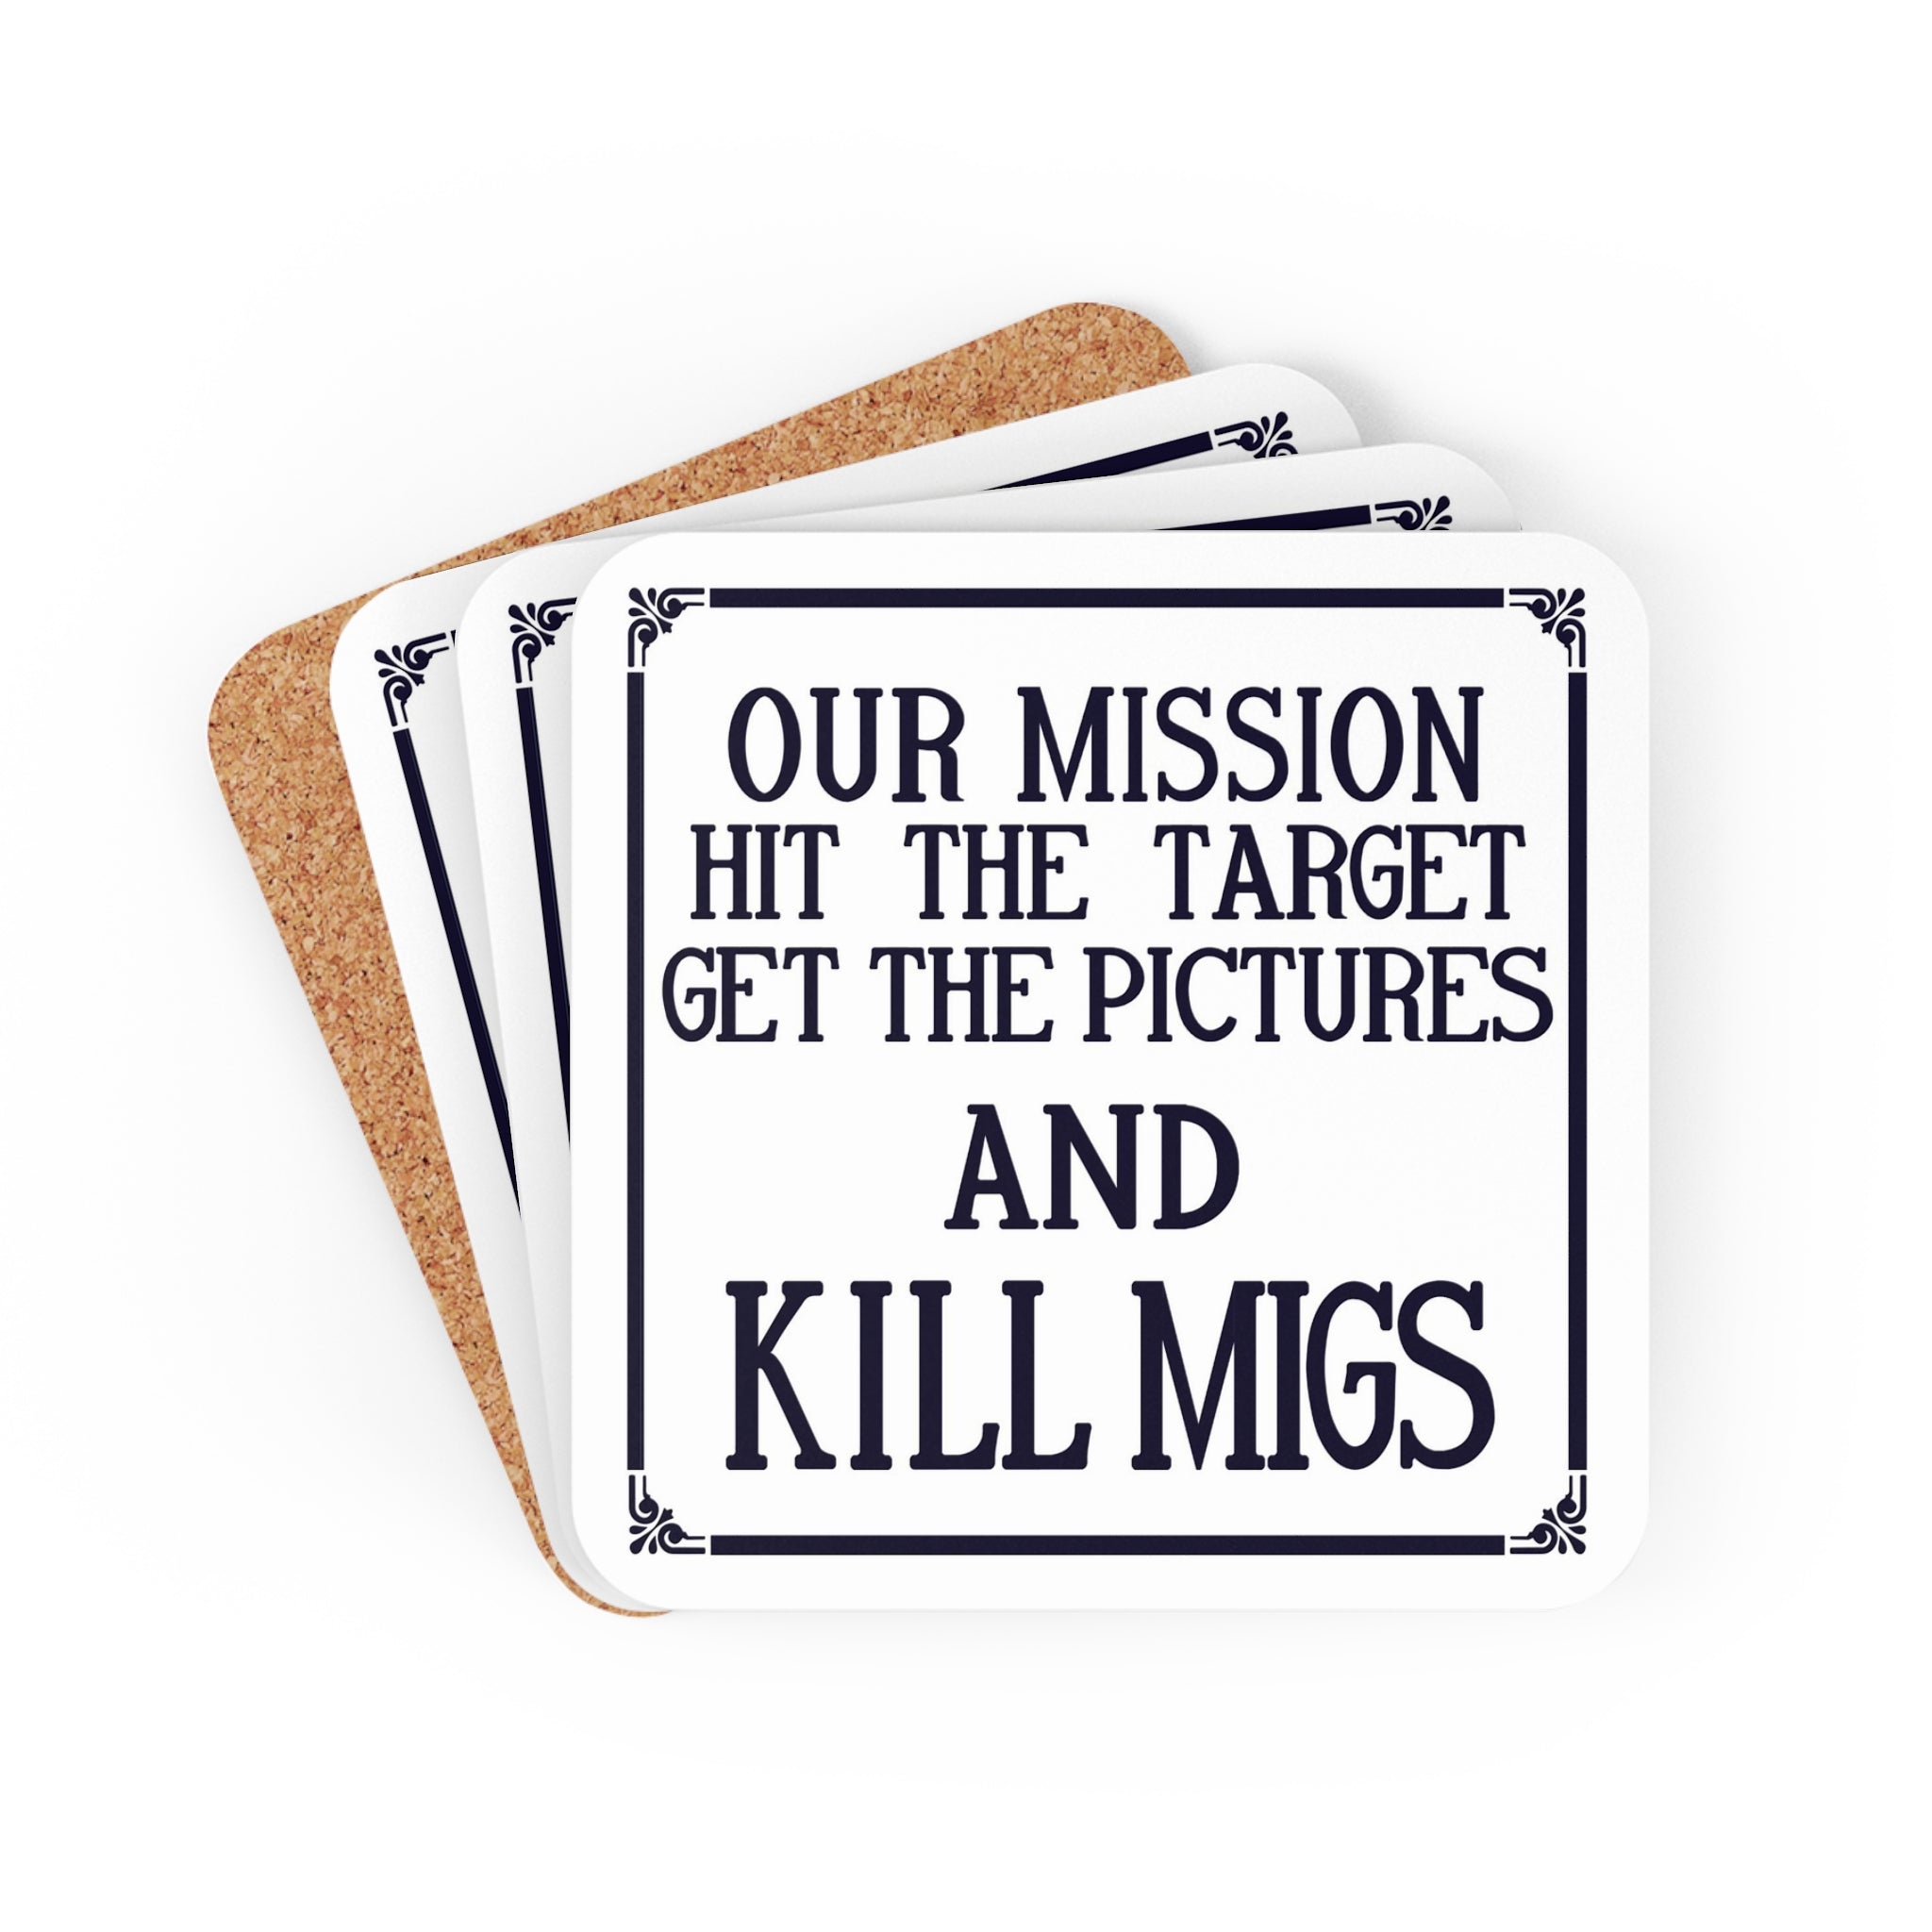 "Kill Migs" Corkwood Coaster Set - I Love a Hangar